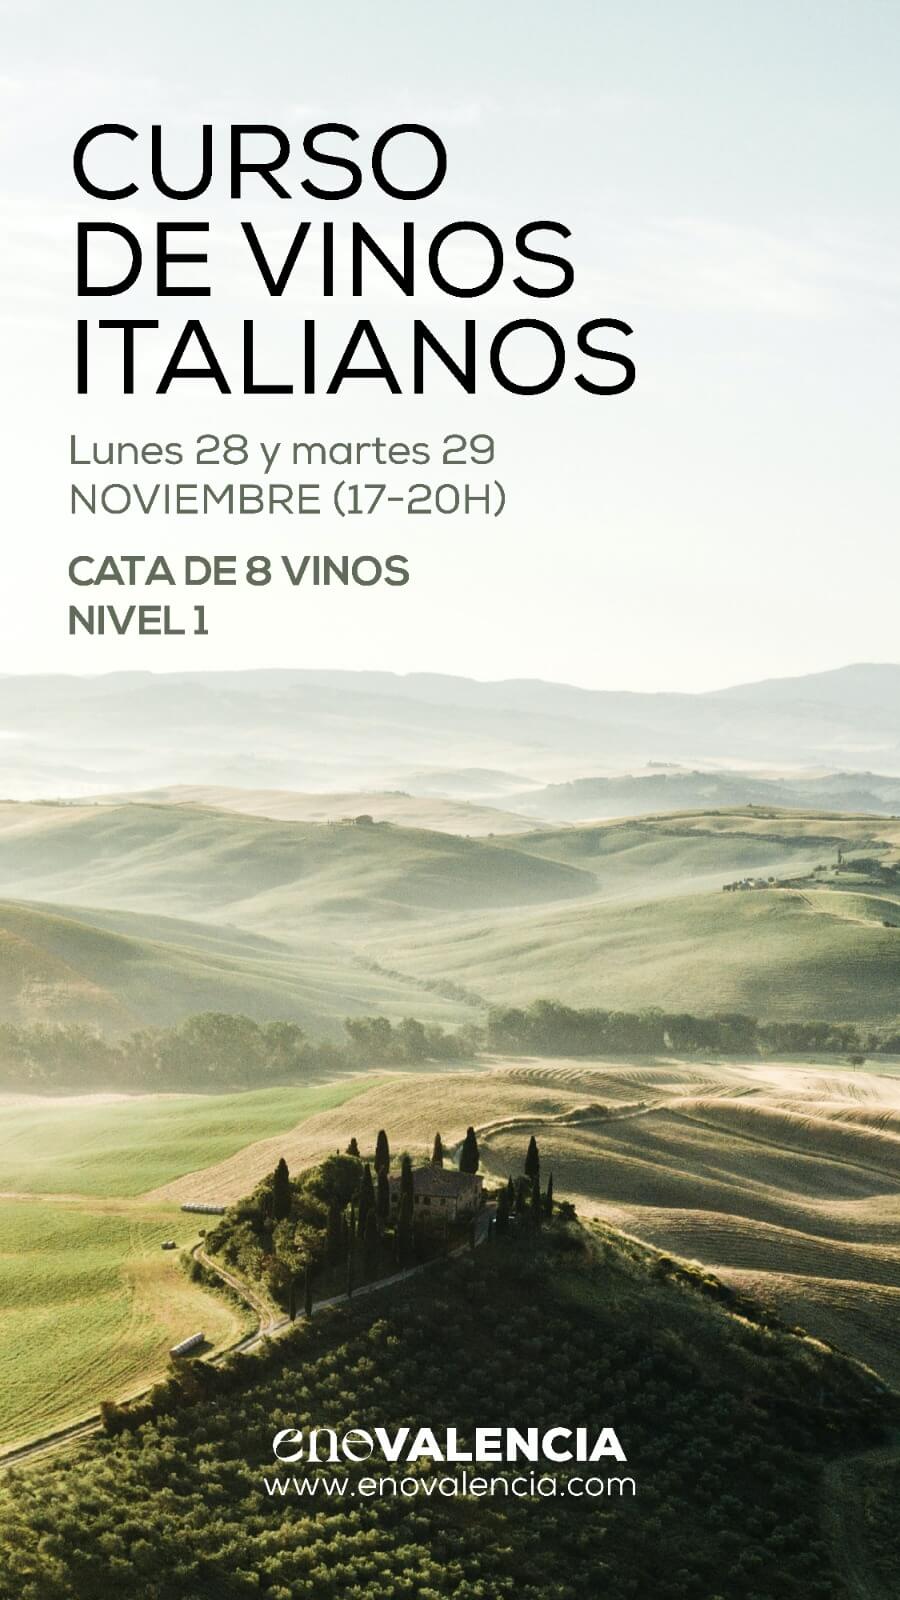 Eventos Curso Vinos Italianos (Nivel 1) EnoValencia - Cata, eventos y venta de vino 7